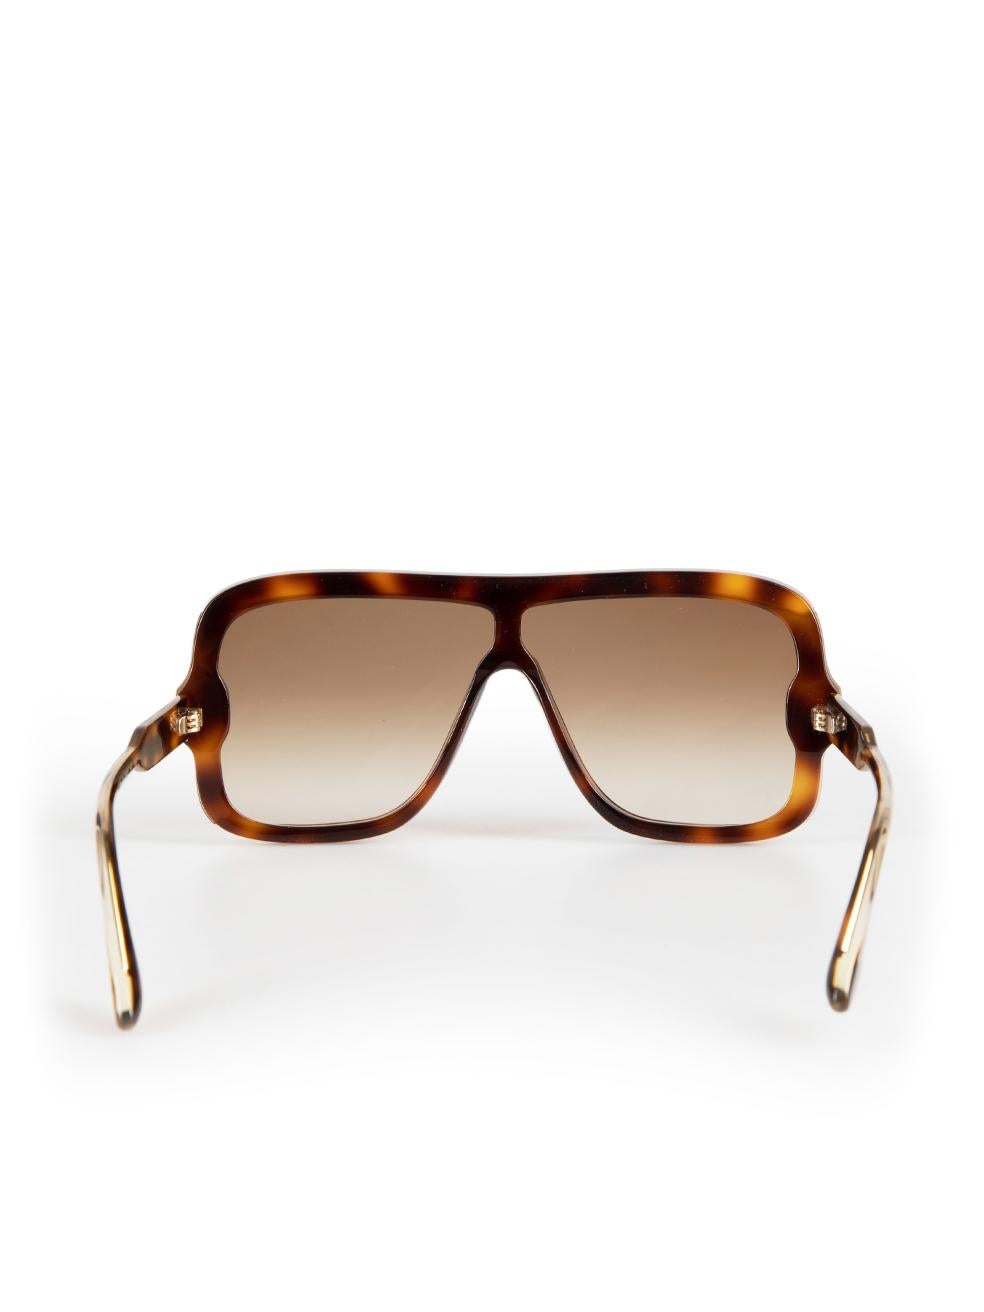 Women's Victoria Beckham Brown Tortoiseshell Shield Sunglasses For Sale